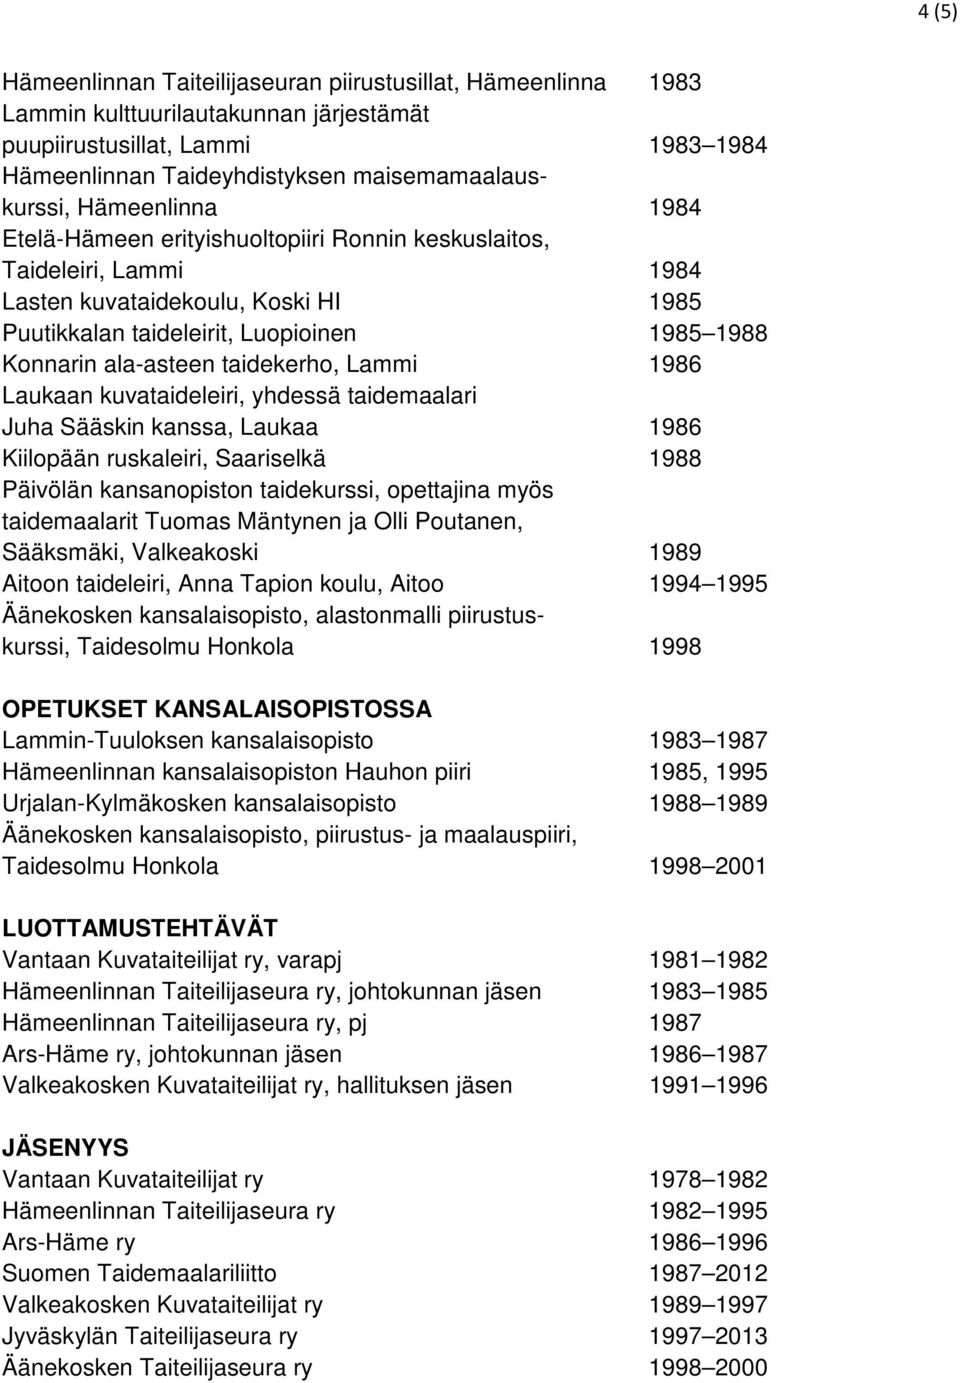 taidekerho, Lammi 1986 Laukaan kuvataideleiri, yhdessä taidemaalari Juha Sääskin kanssa, Laukaa 1986 Kiilopään ruskaleiri, Saariselkä 1988 Päivölän kansanopiston taidekurssi, opettajina myös